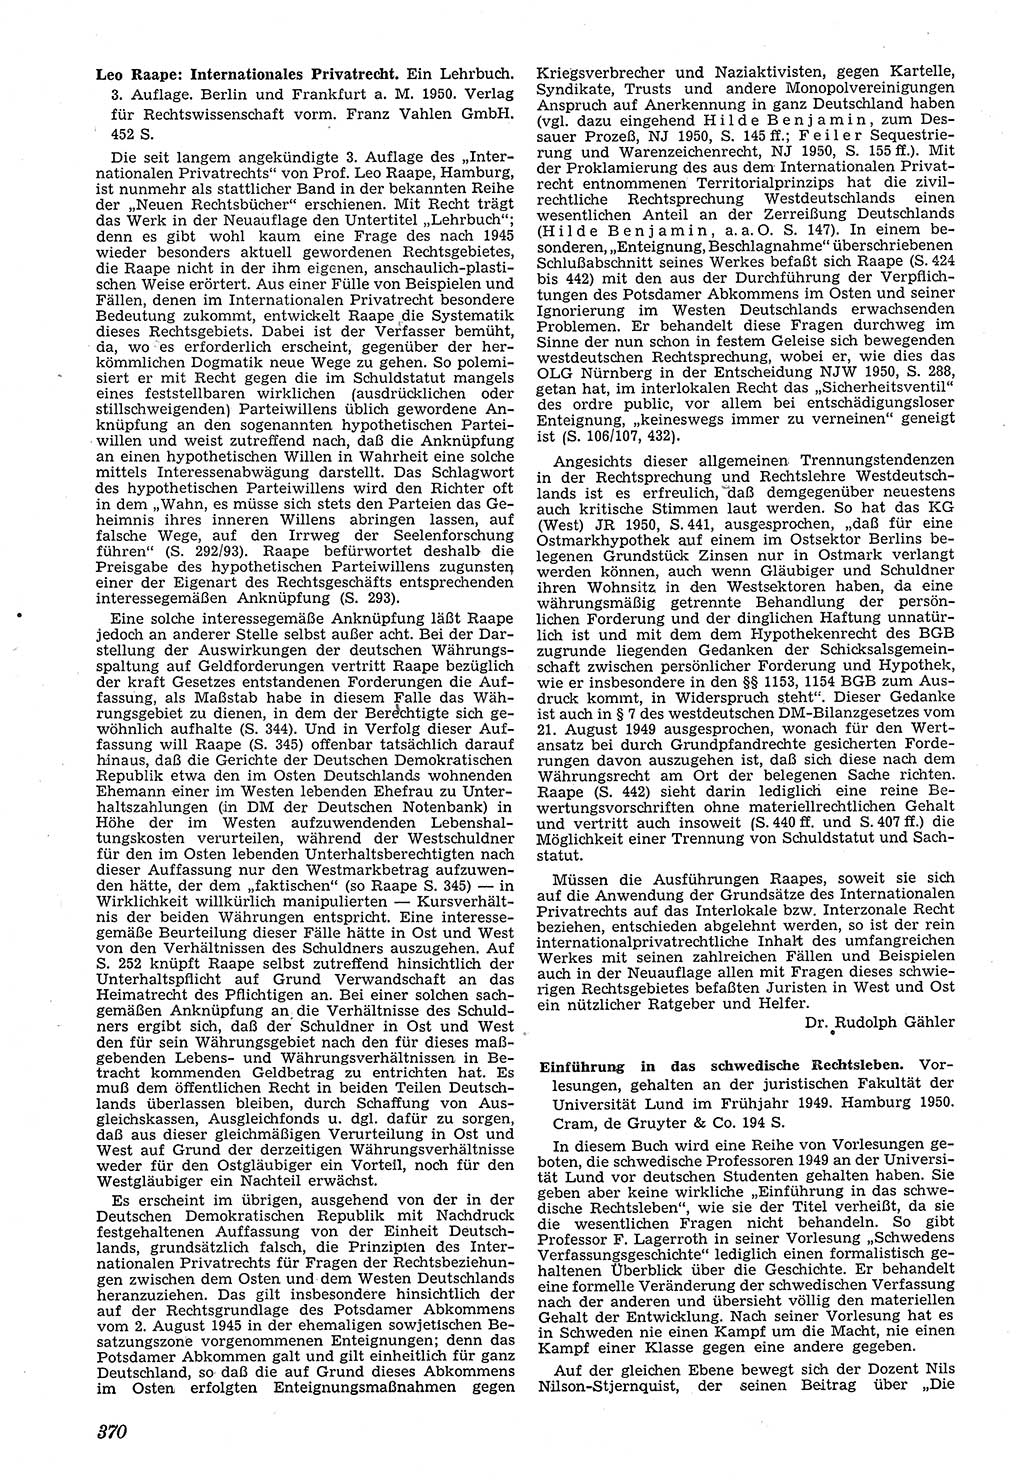 Neue Justiz (NJ), Zeitschrift für Recht und Rechtswissenschaft [Deutsche Demokratische Republik (DDR)], 4. Jahrgang 1950, Seite 370 (NJ DDR 1950, S. 370)